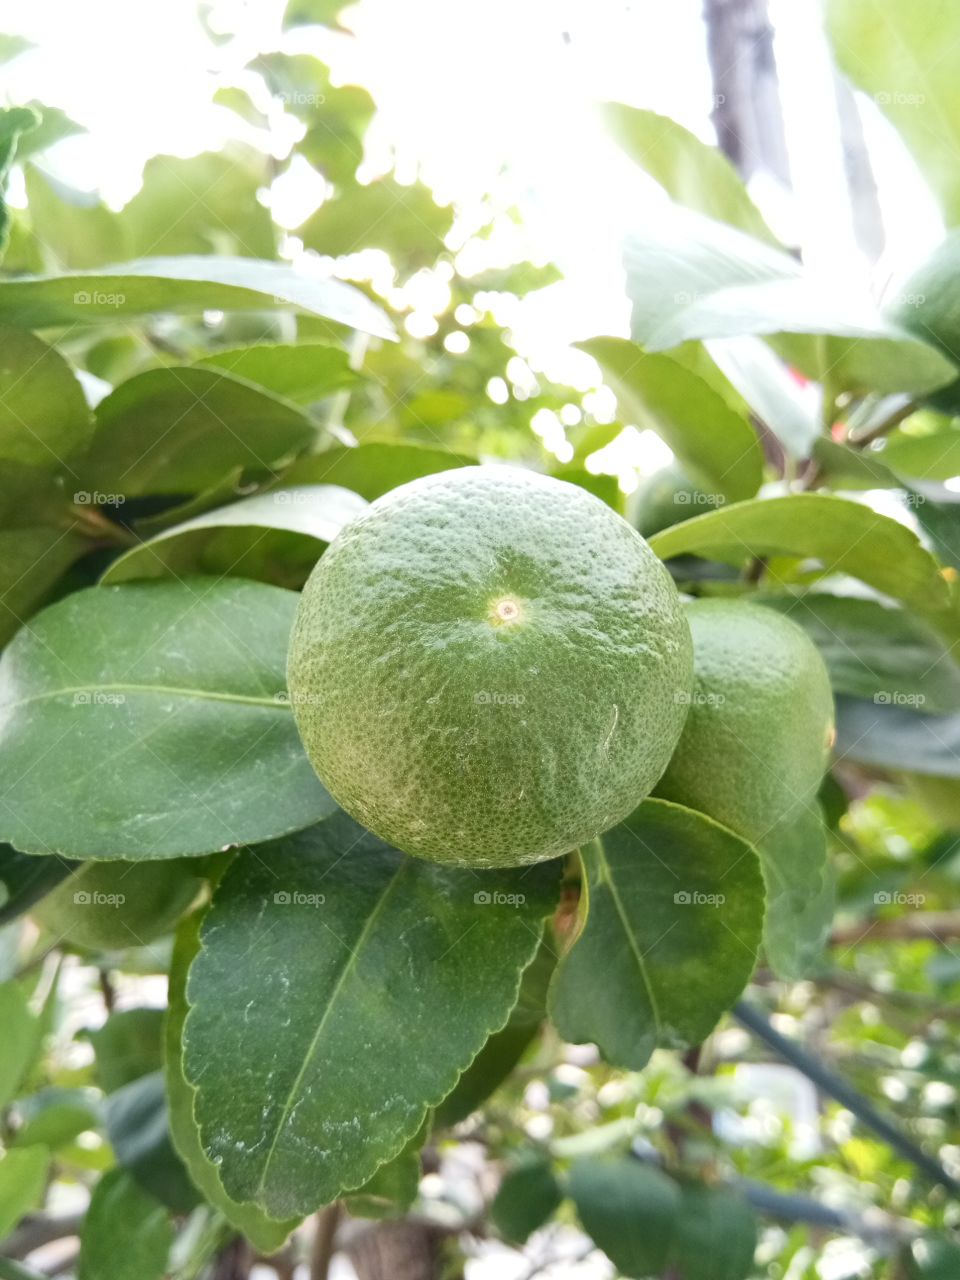 lemon
green
fruit
vegetable